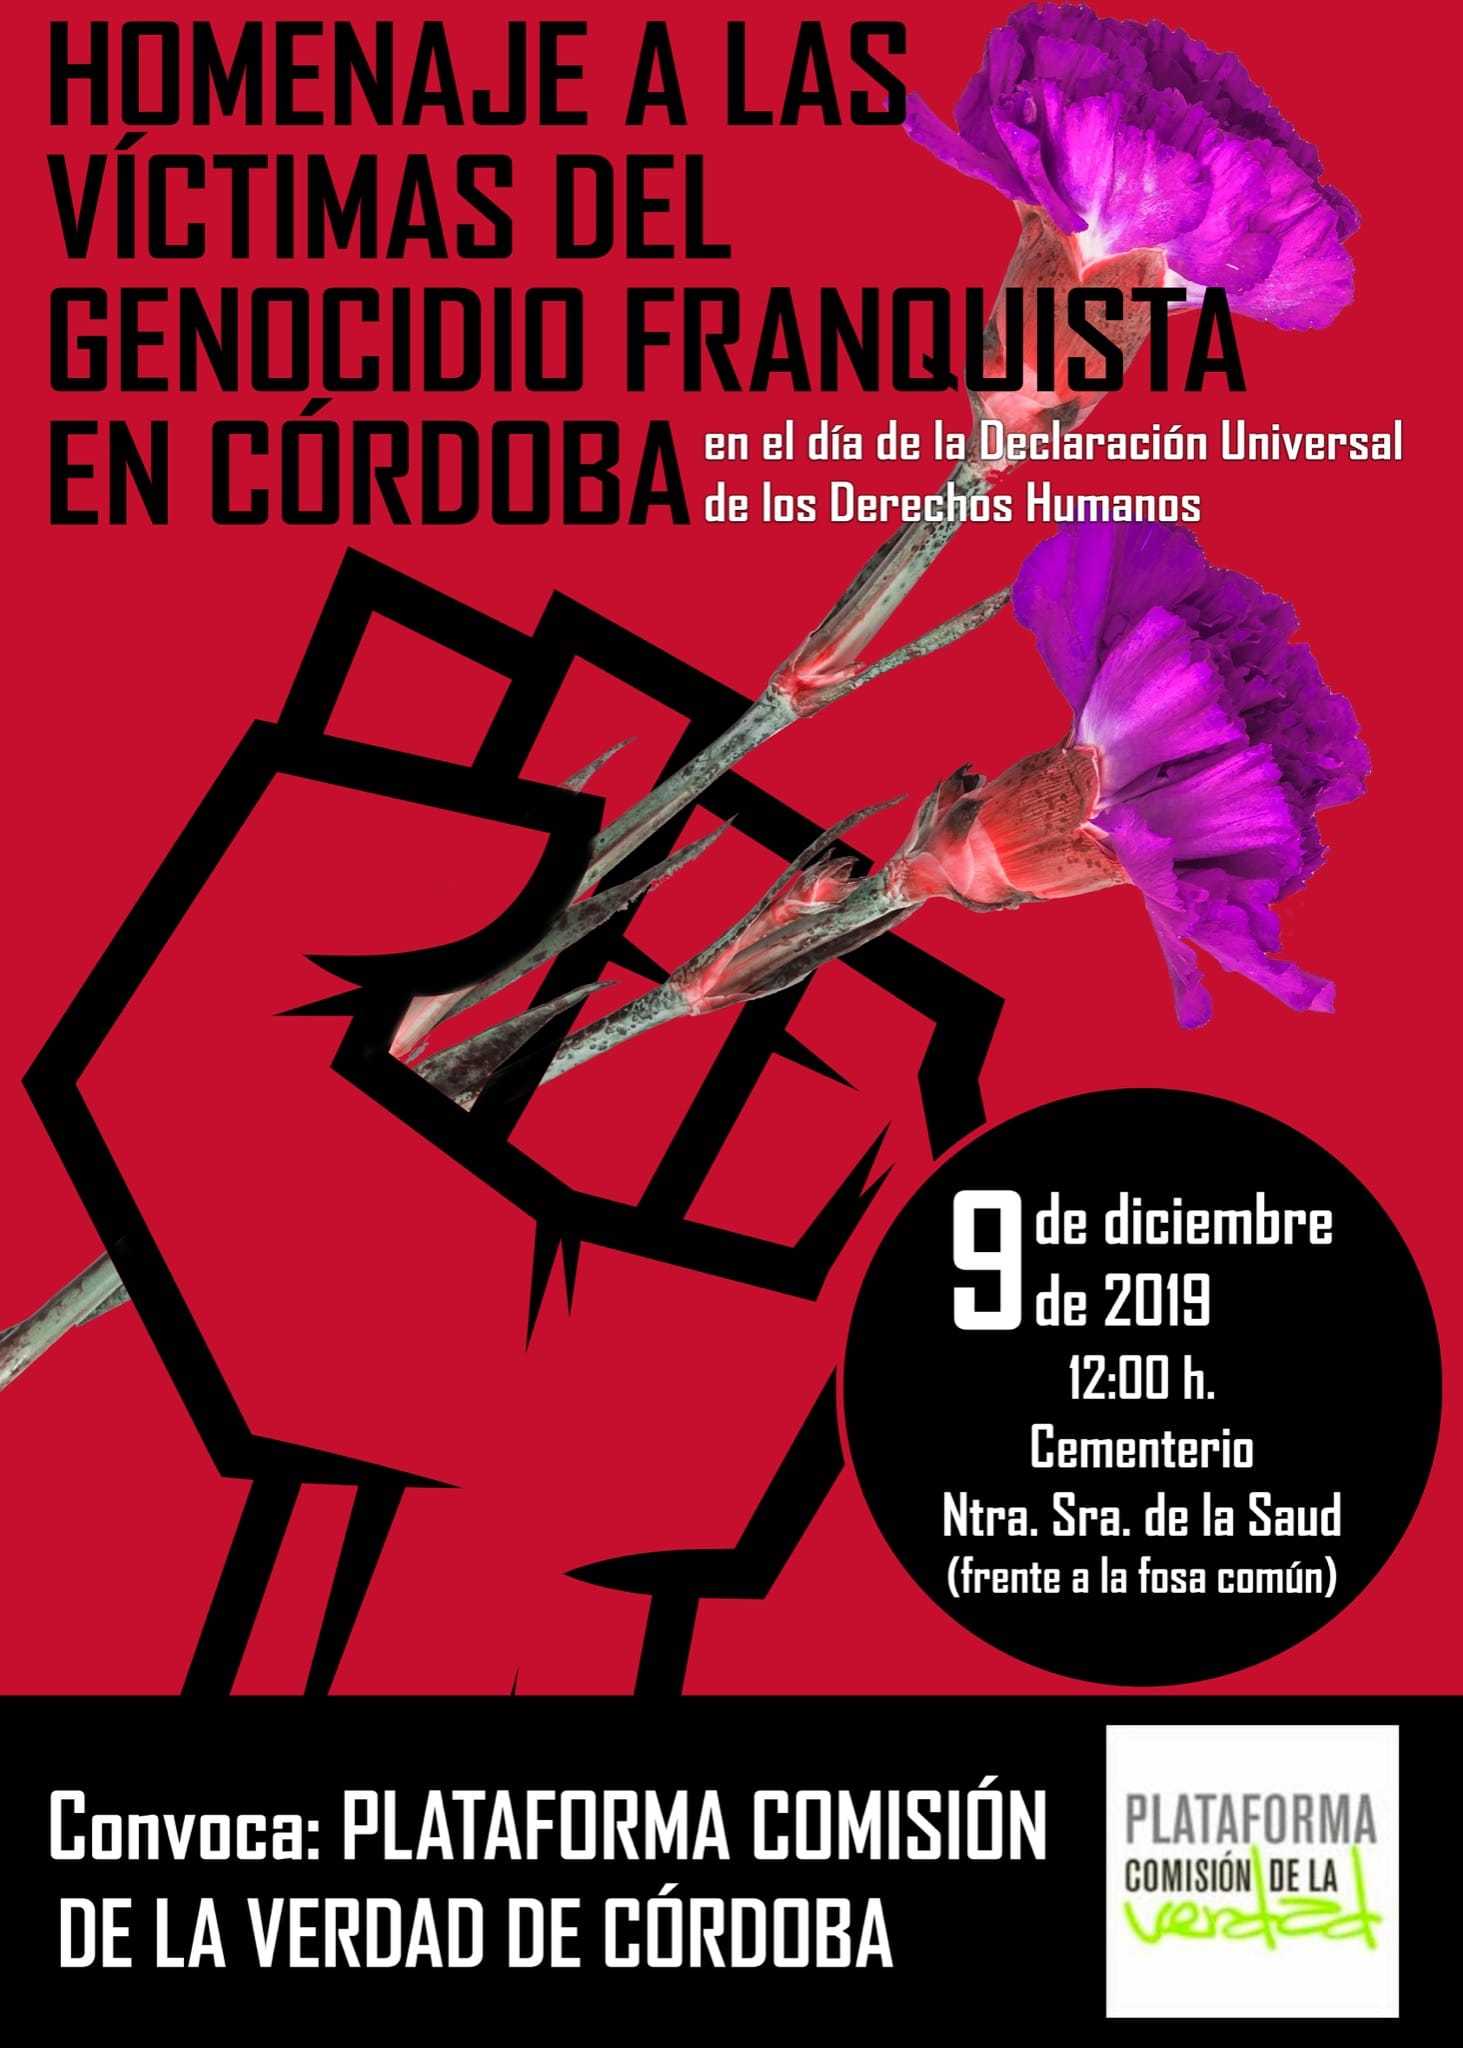 Homenaje a los represaliados del franquismo enterrados en el cementerio de La Salud de Córdoba